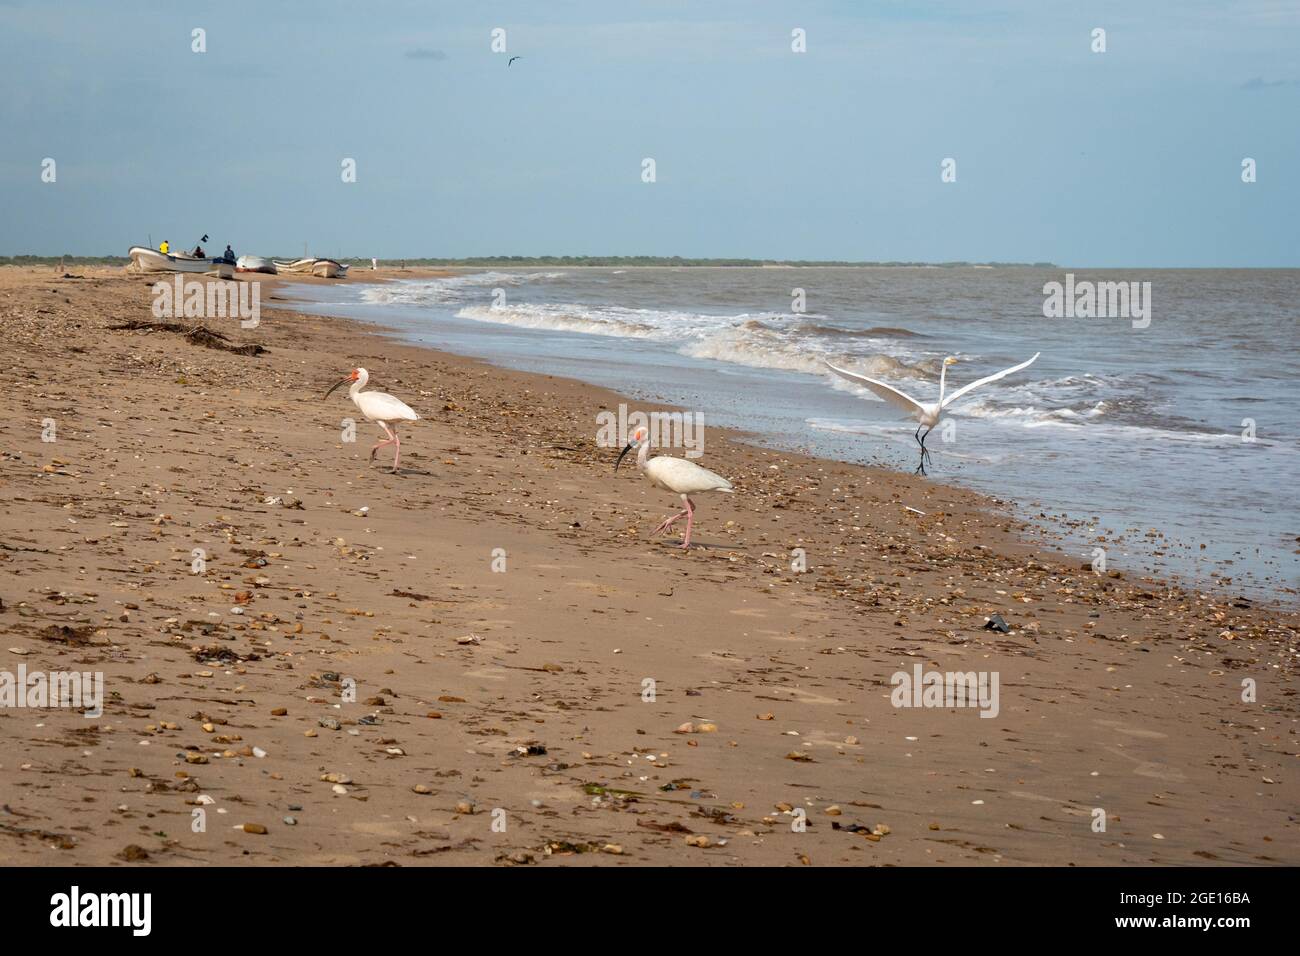 El American White Ibis (Eudocimus albus) está caminando por la arena lejos de la costa Foto de stock